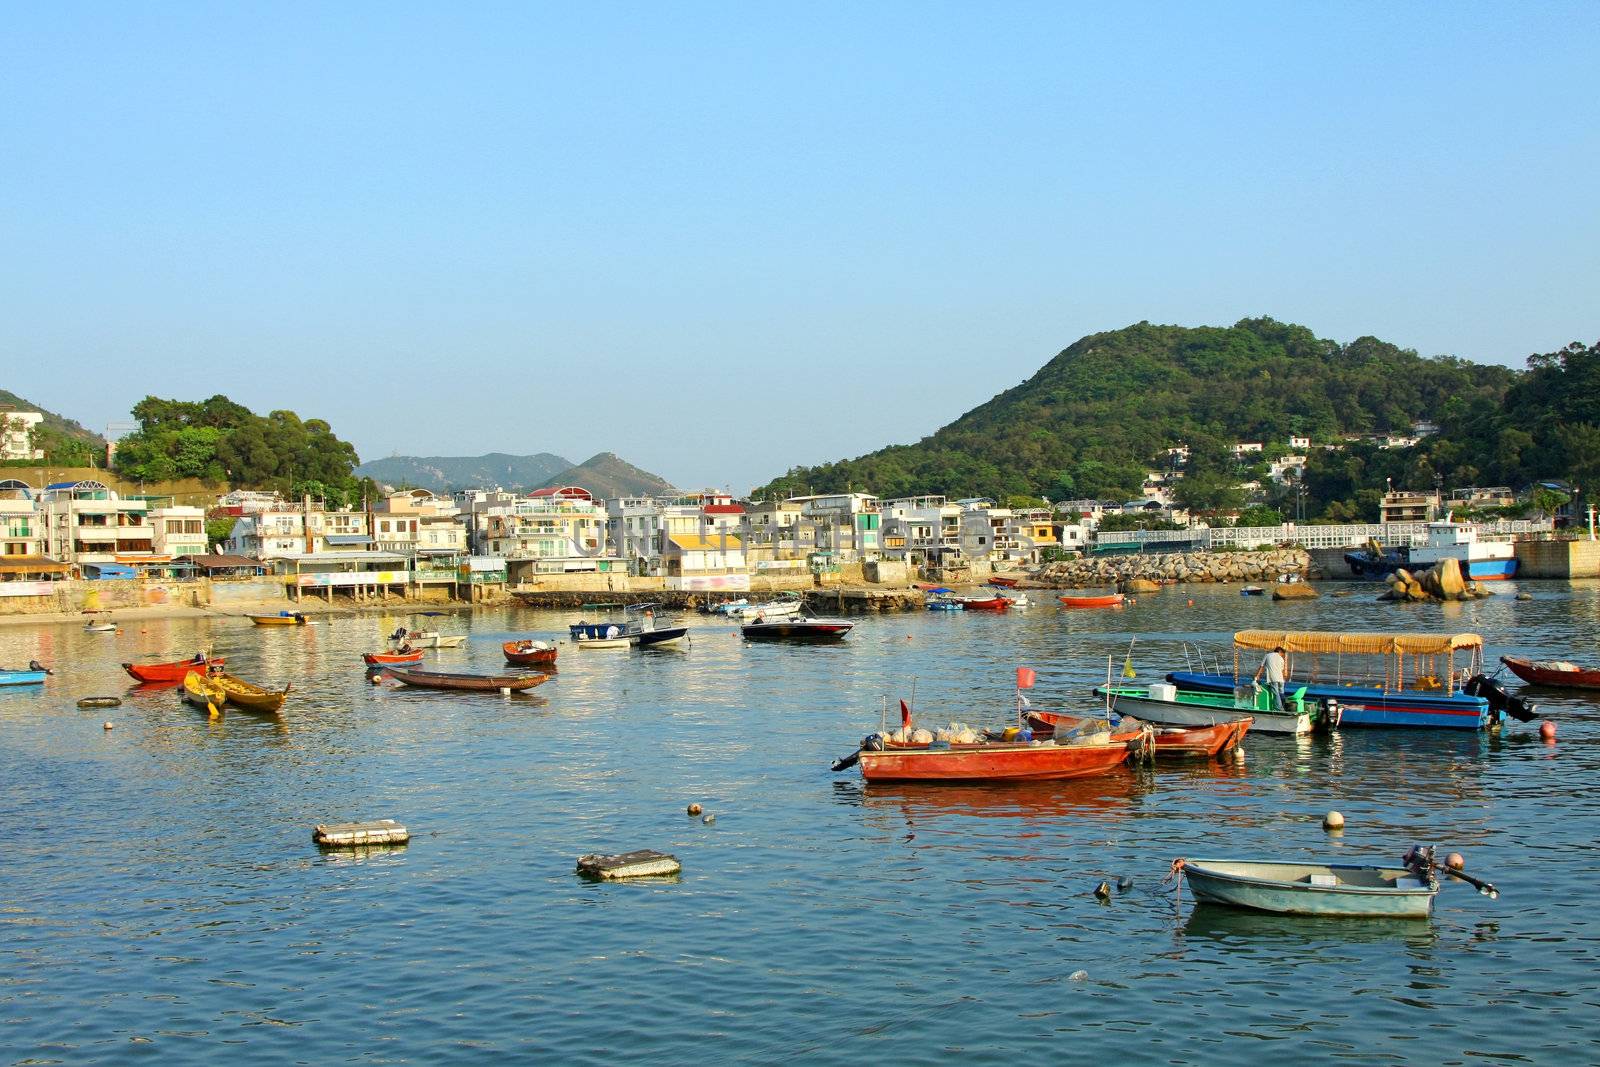 Coastal area with many fishing boats in Lamma Island, Hong Kong.